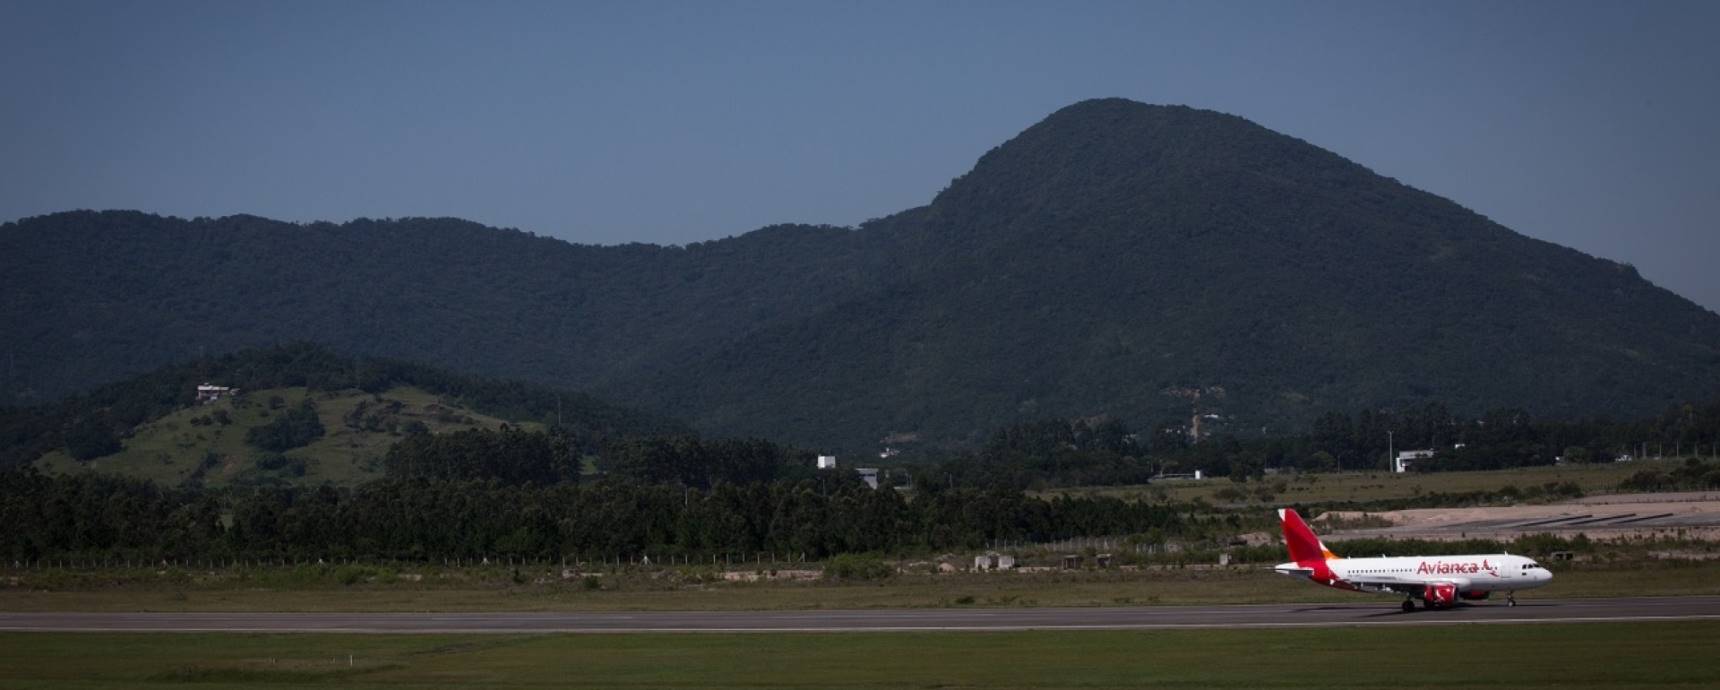 Comunicado: operação da Avianca Brasil está normalizada no Aeroporto Internacional de Florianópolis